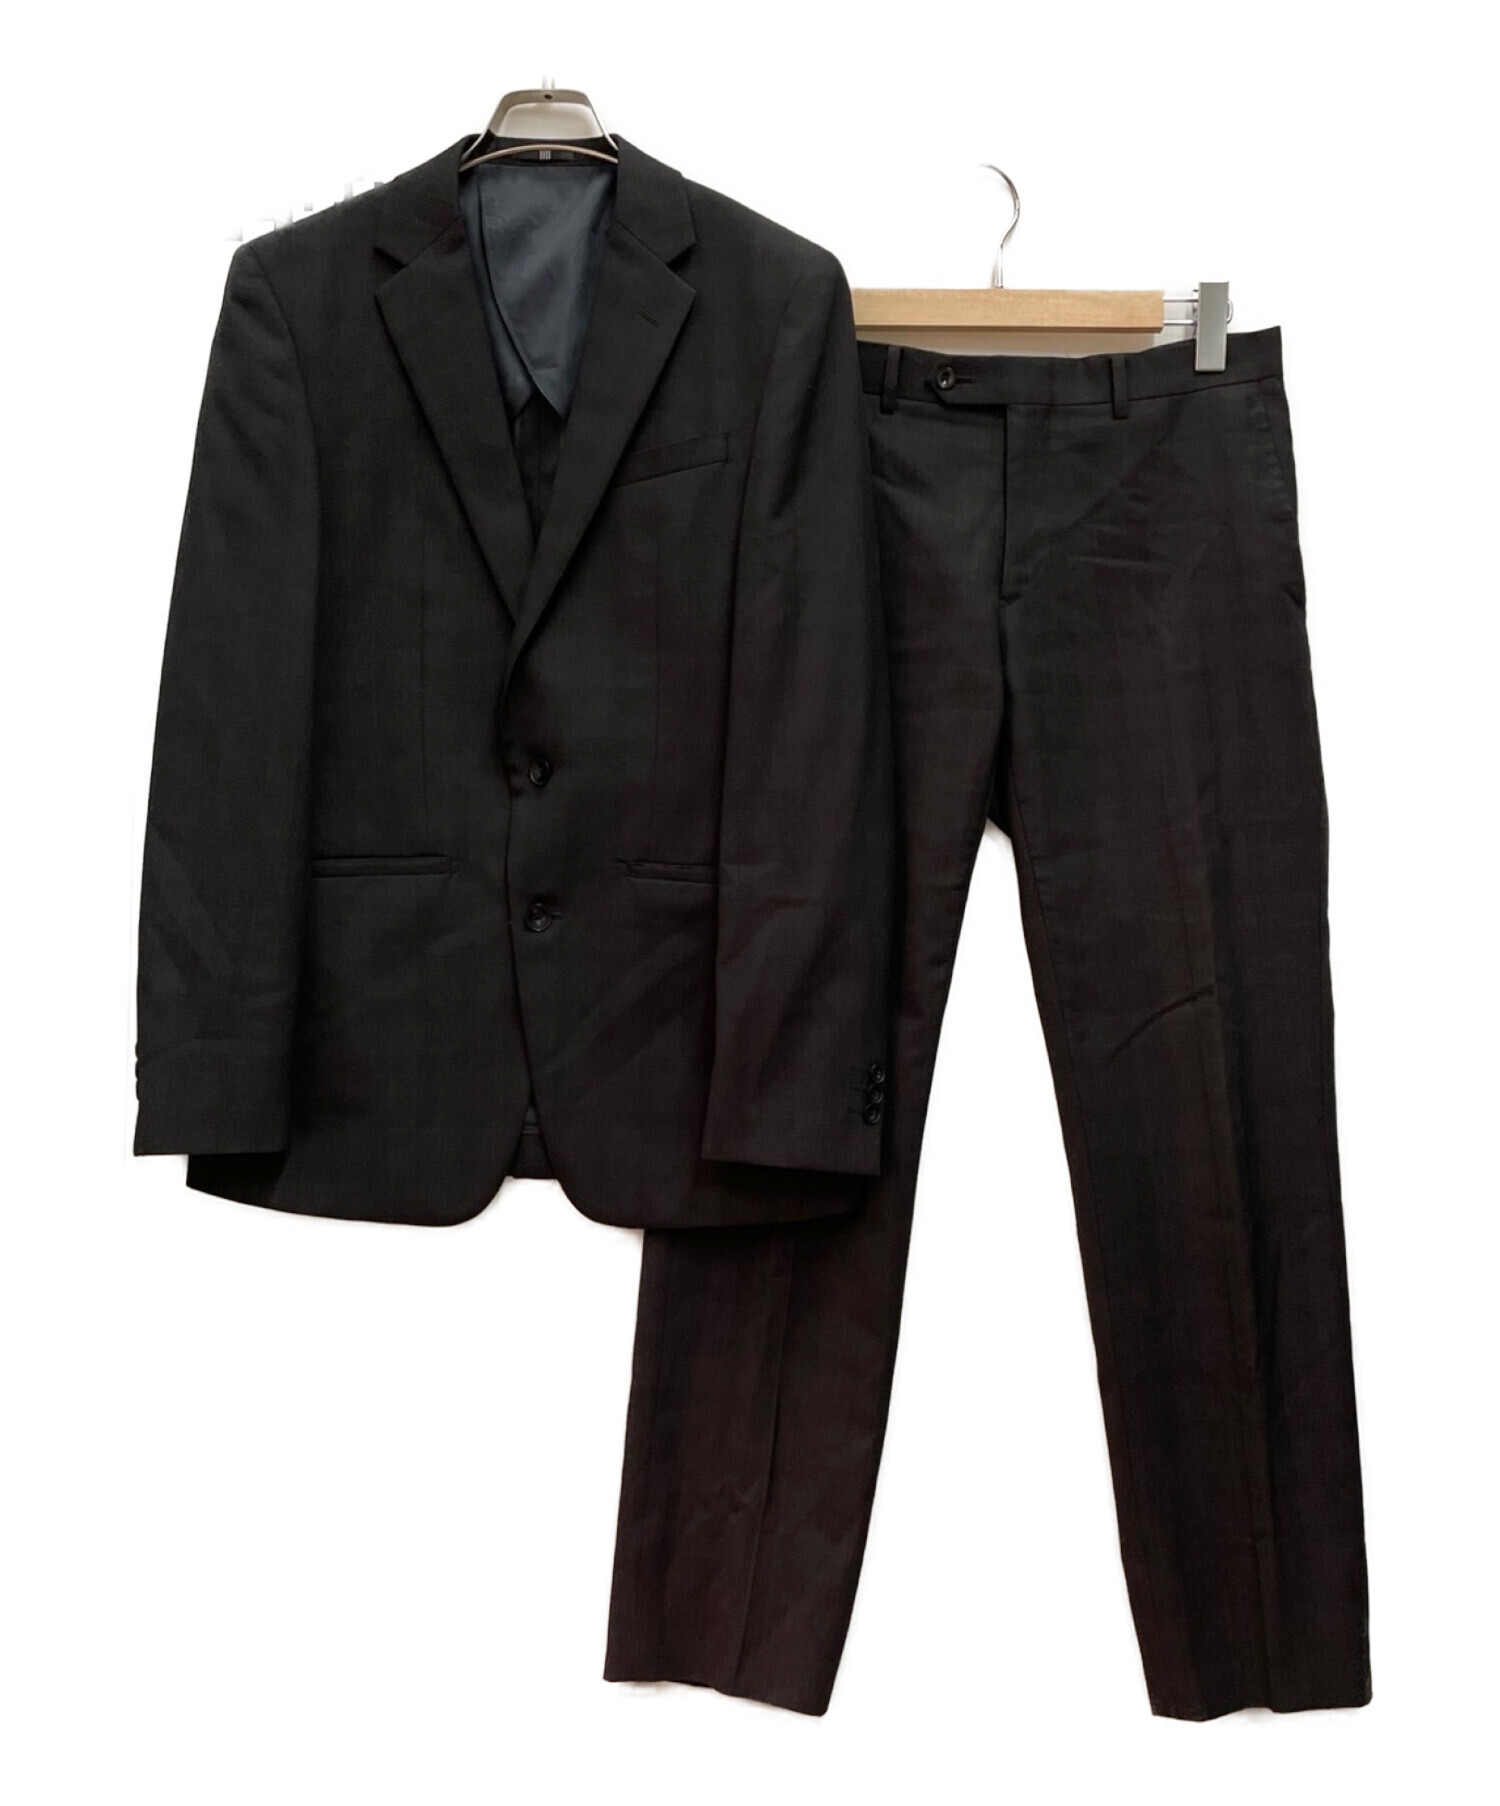 SUIT SELECT(スーツセレクト) スラックス ブラック - スーツ